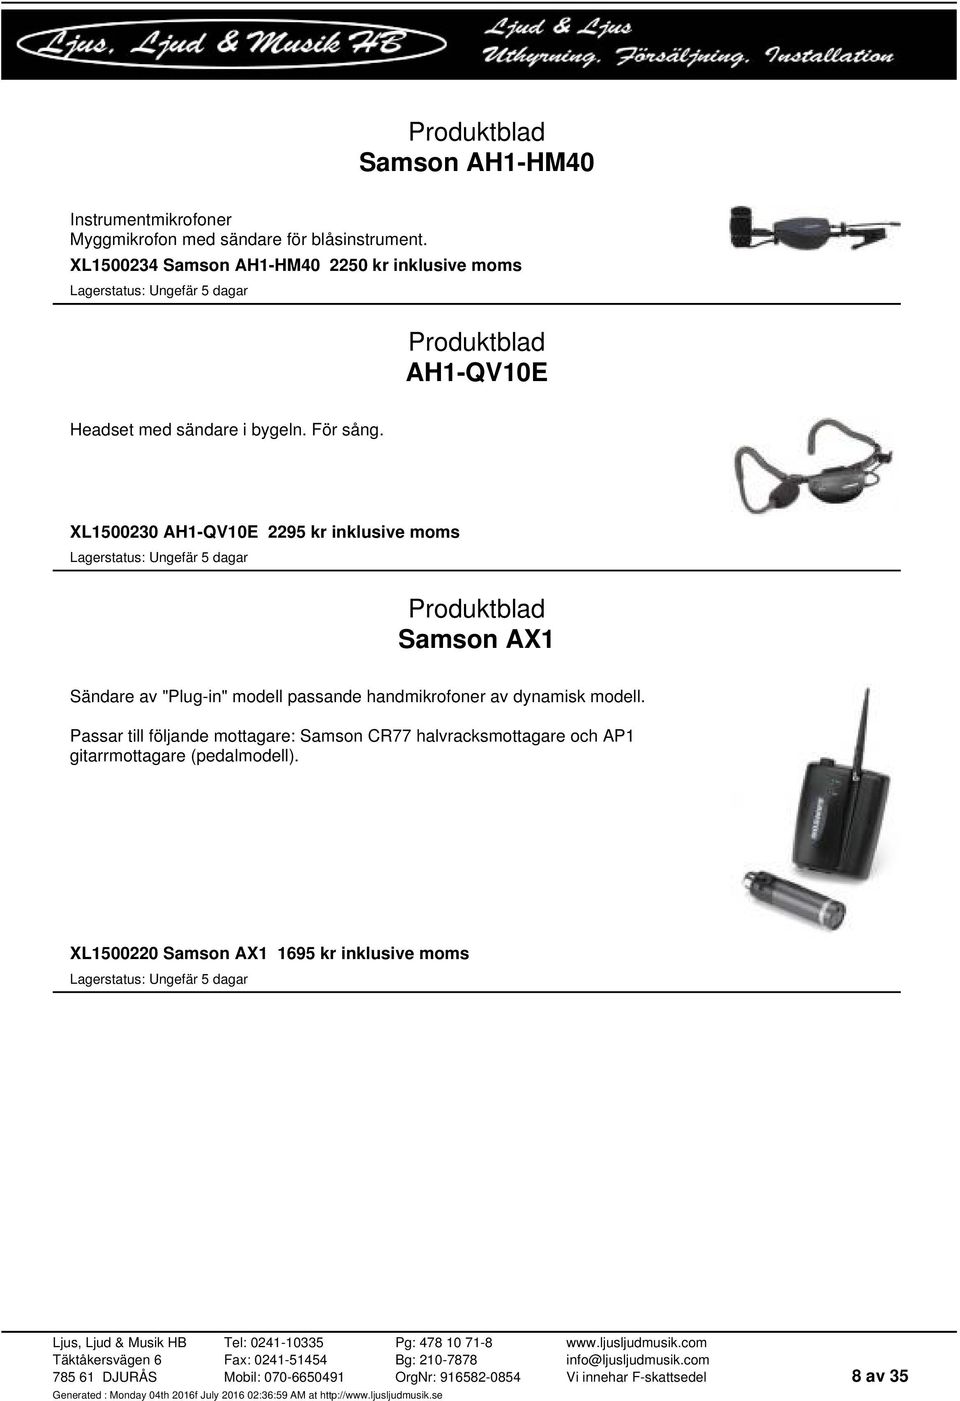 XL1500230 AH1-QV10E 2295 kr Samson AX1 Sändare av "Plug-in" modell passande handmikrofoner av dynamisk